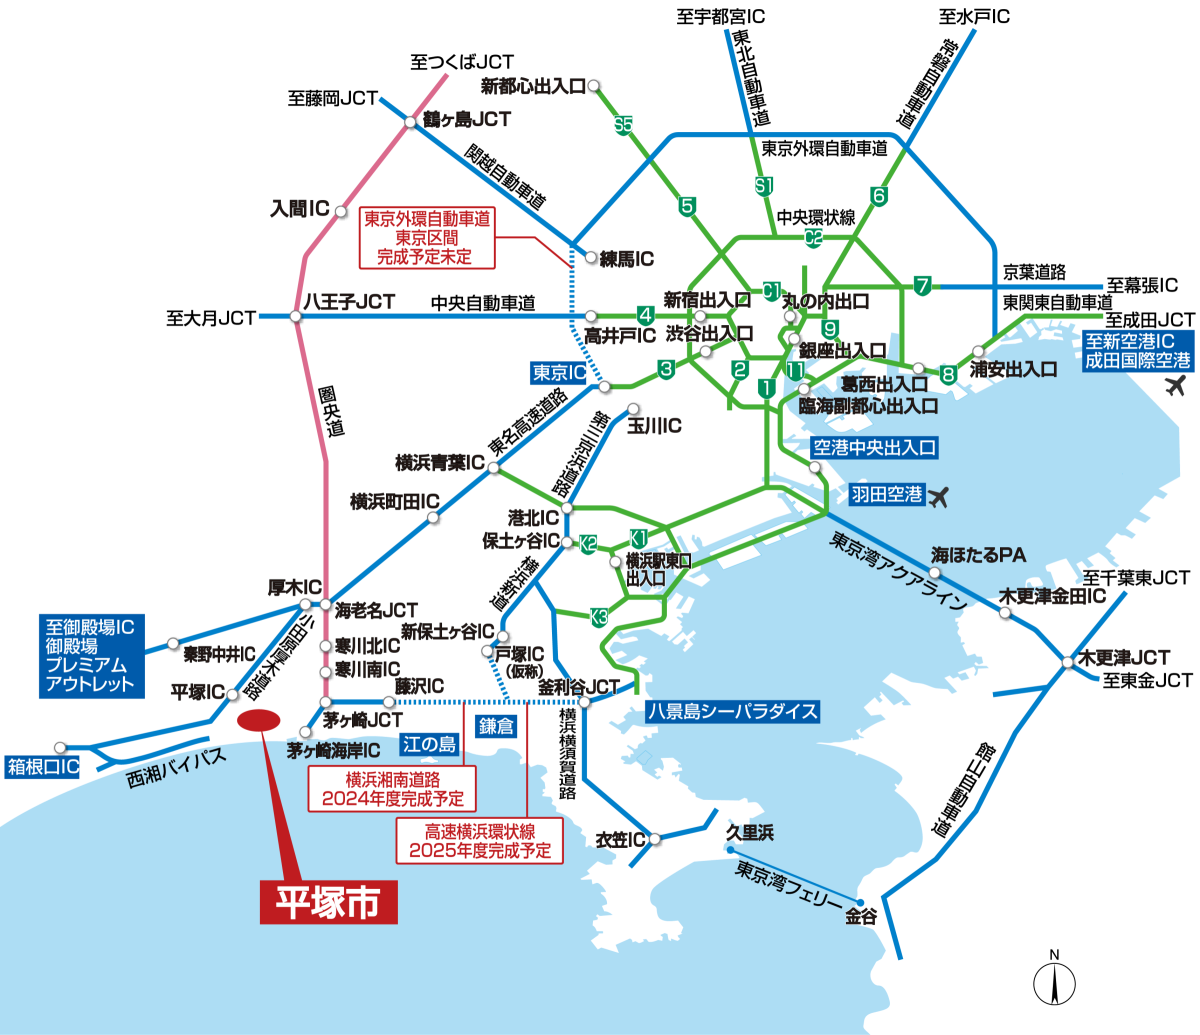 平塚市の場所を示した首都圏高速道路マップ